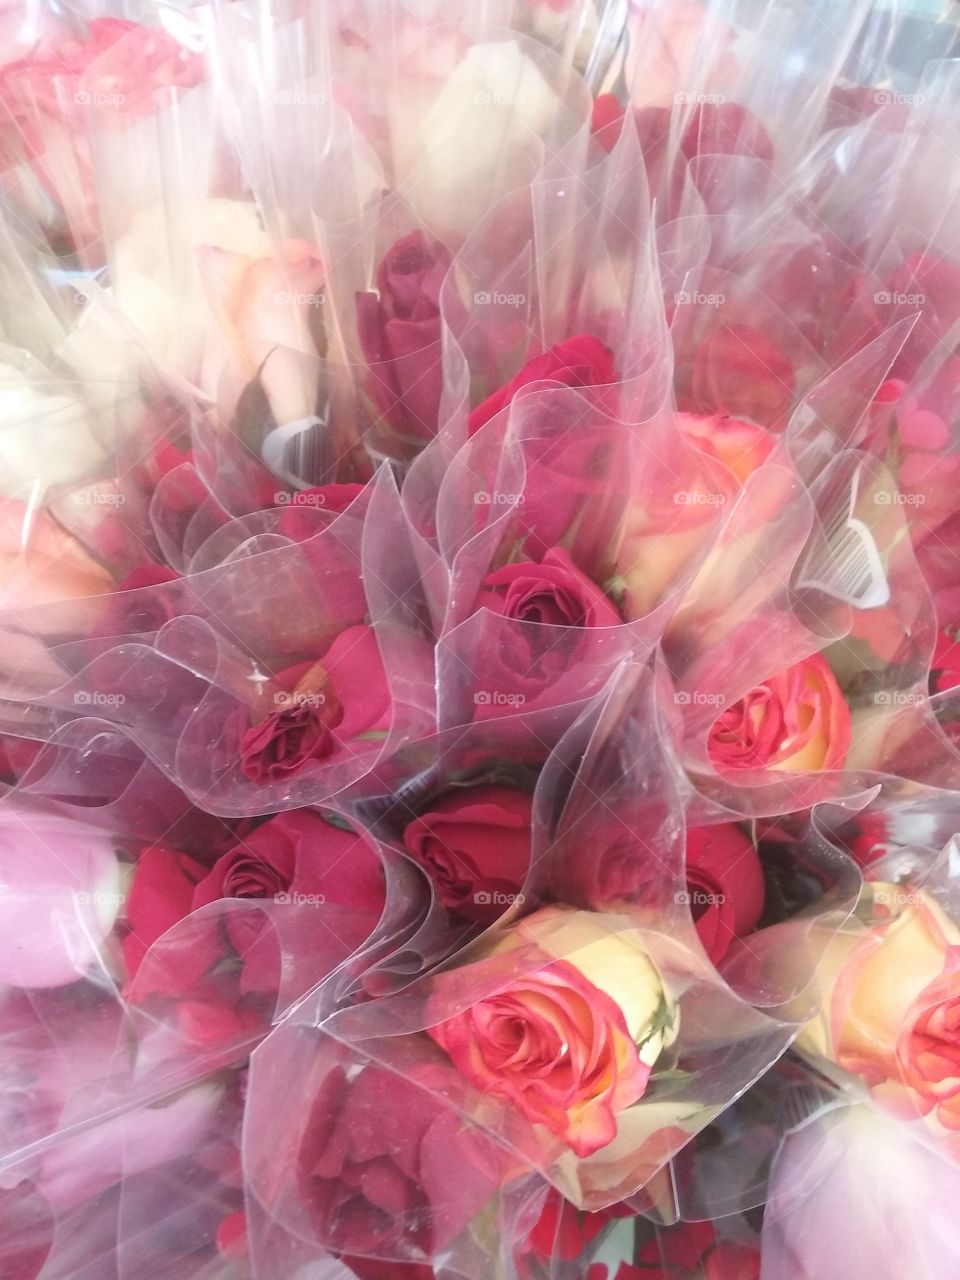 roses for Valentine's